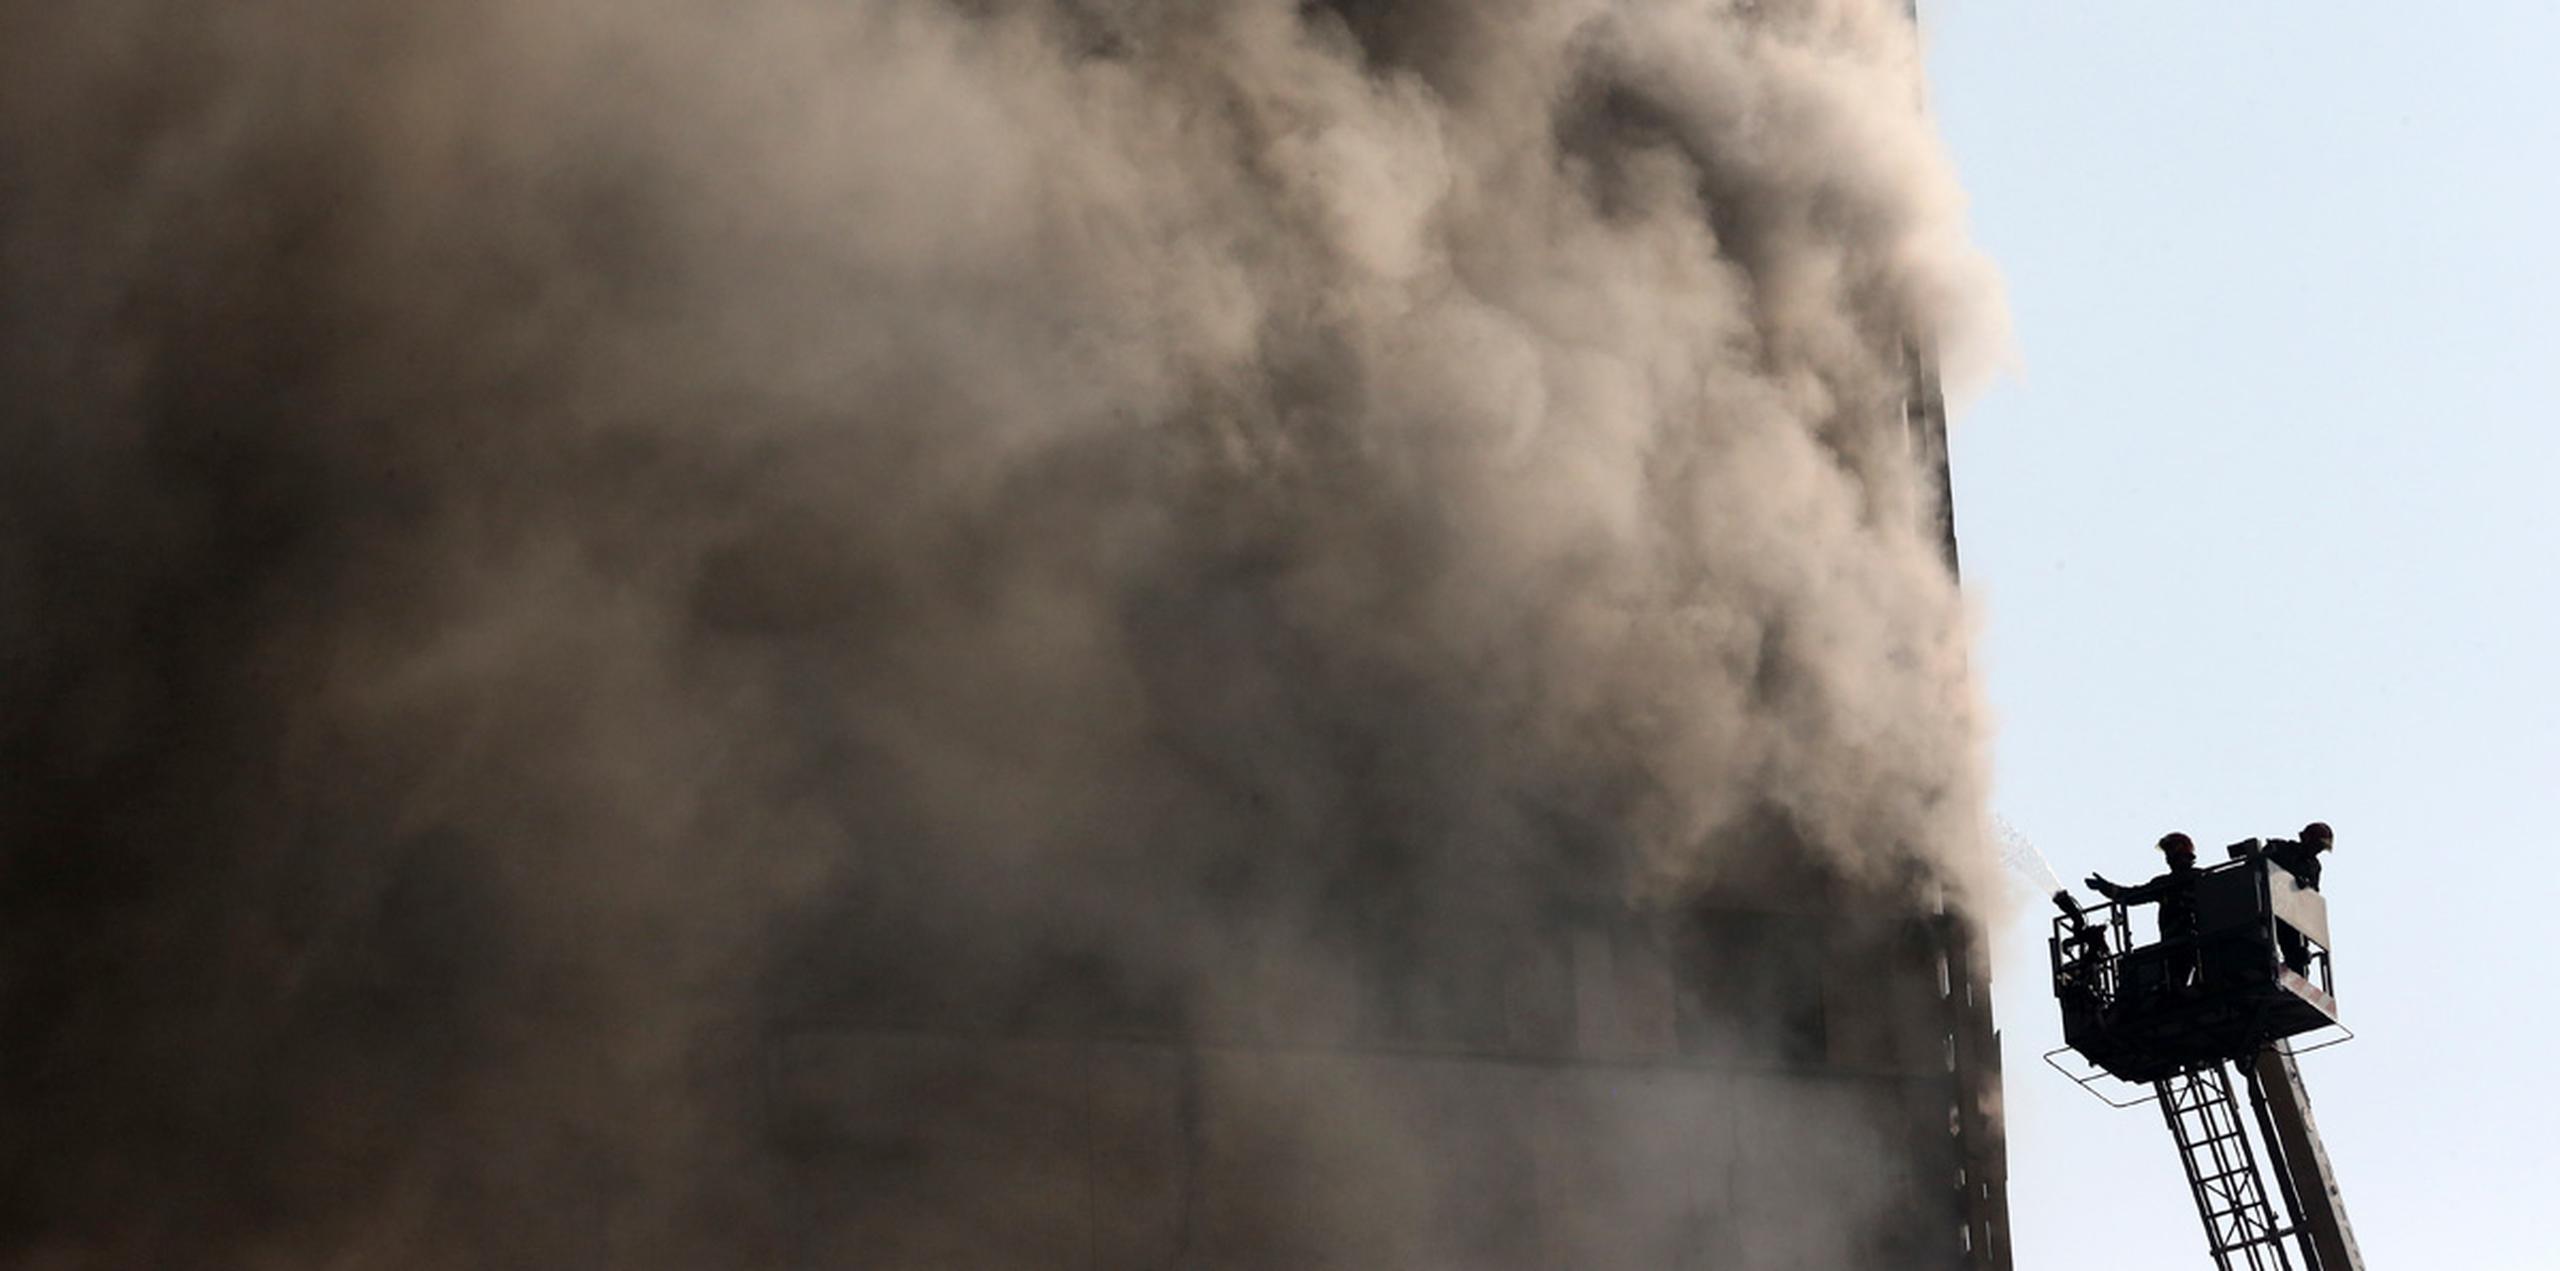 Los bomberos lucharon contra las llamas durante varias horas antes de que el inmueble se viniera abajo. (AP)